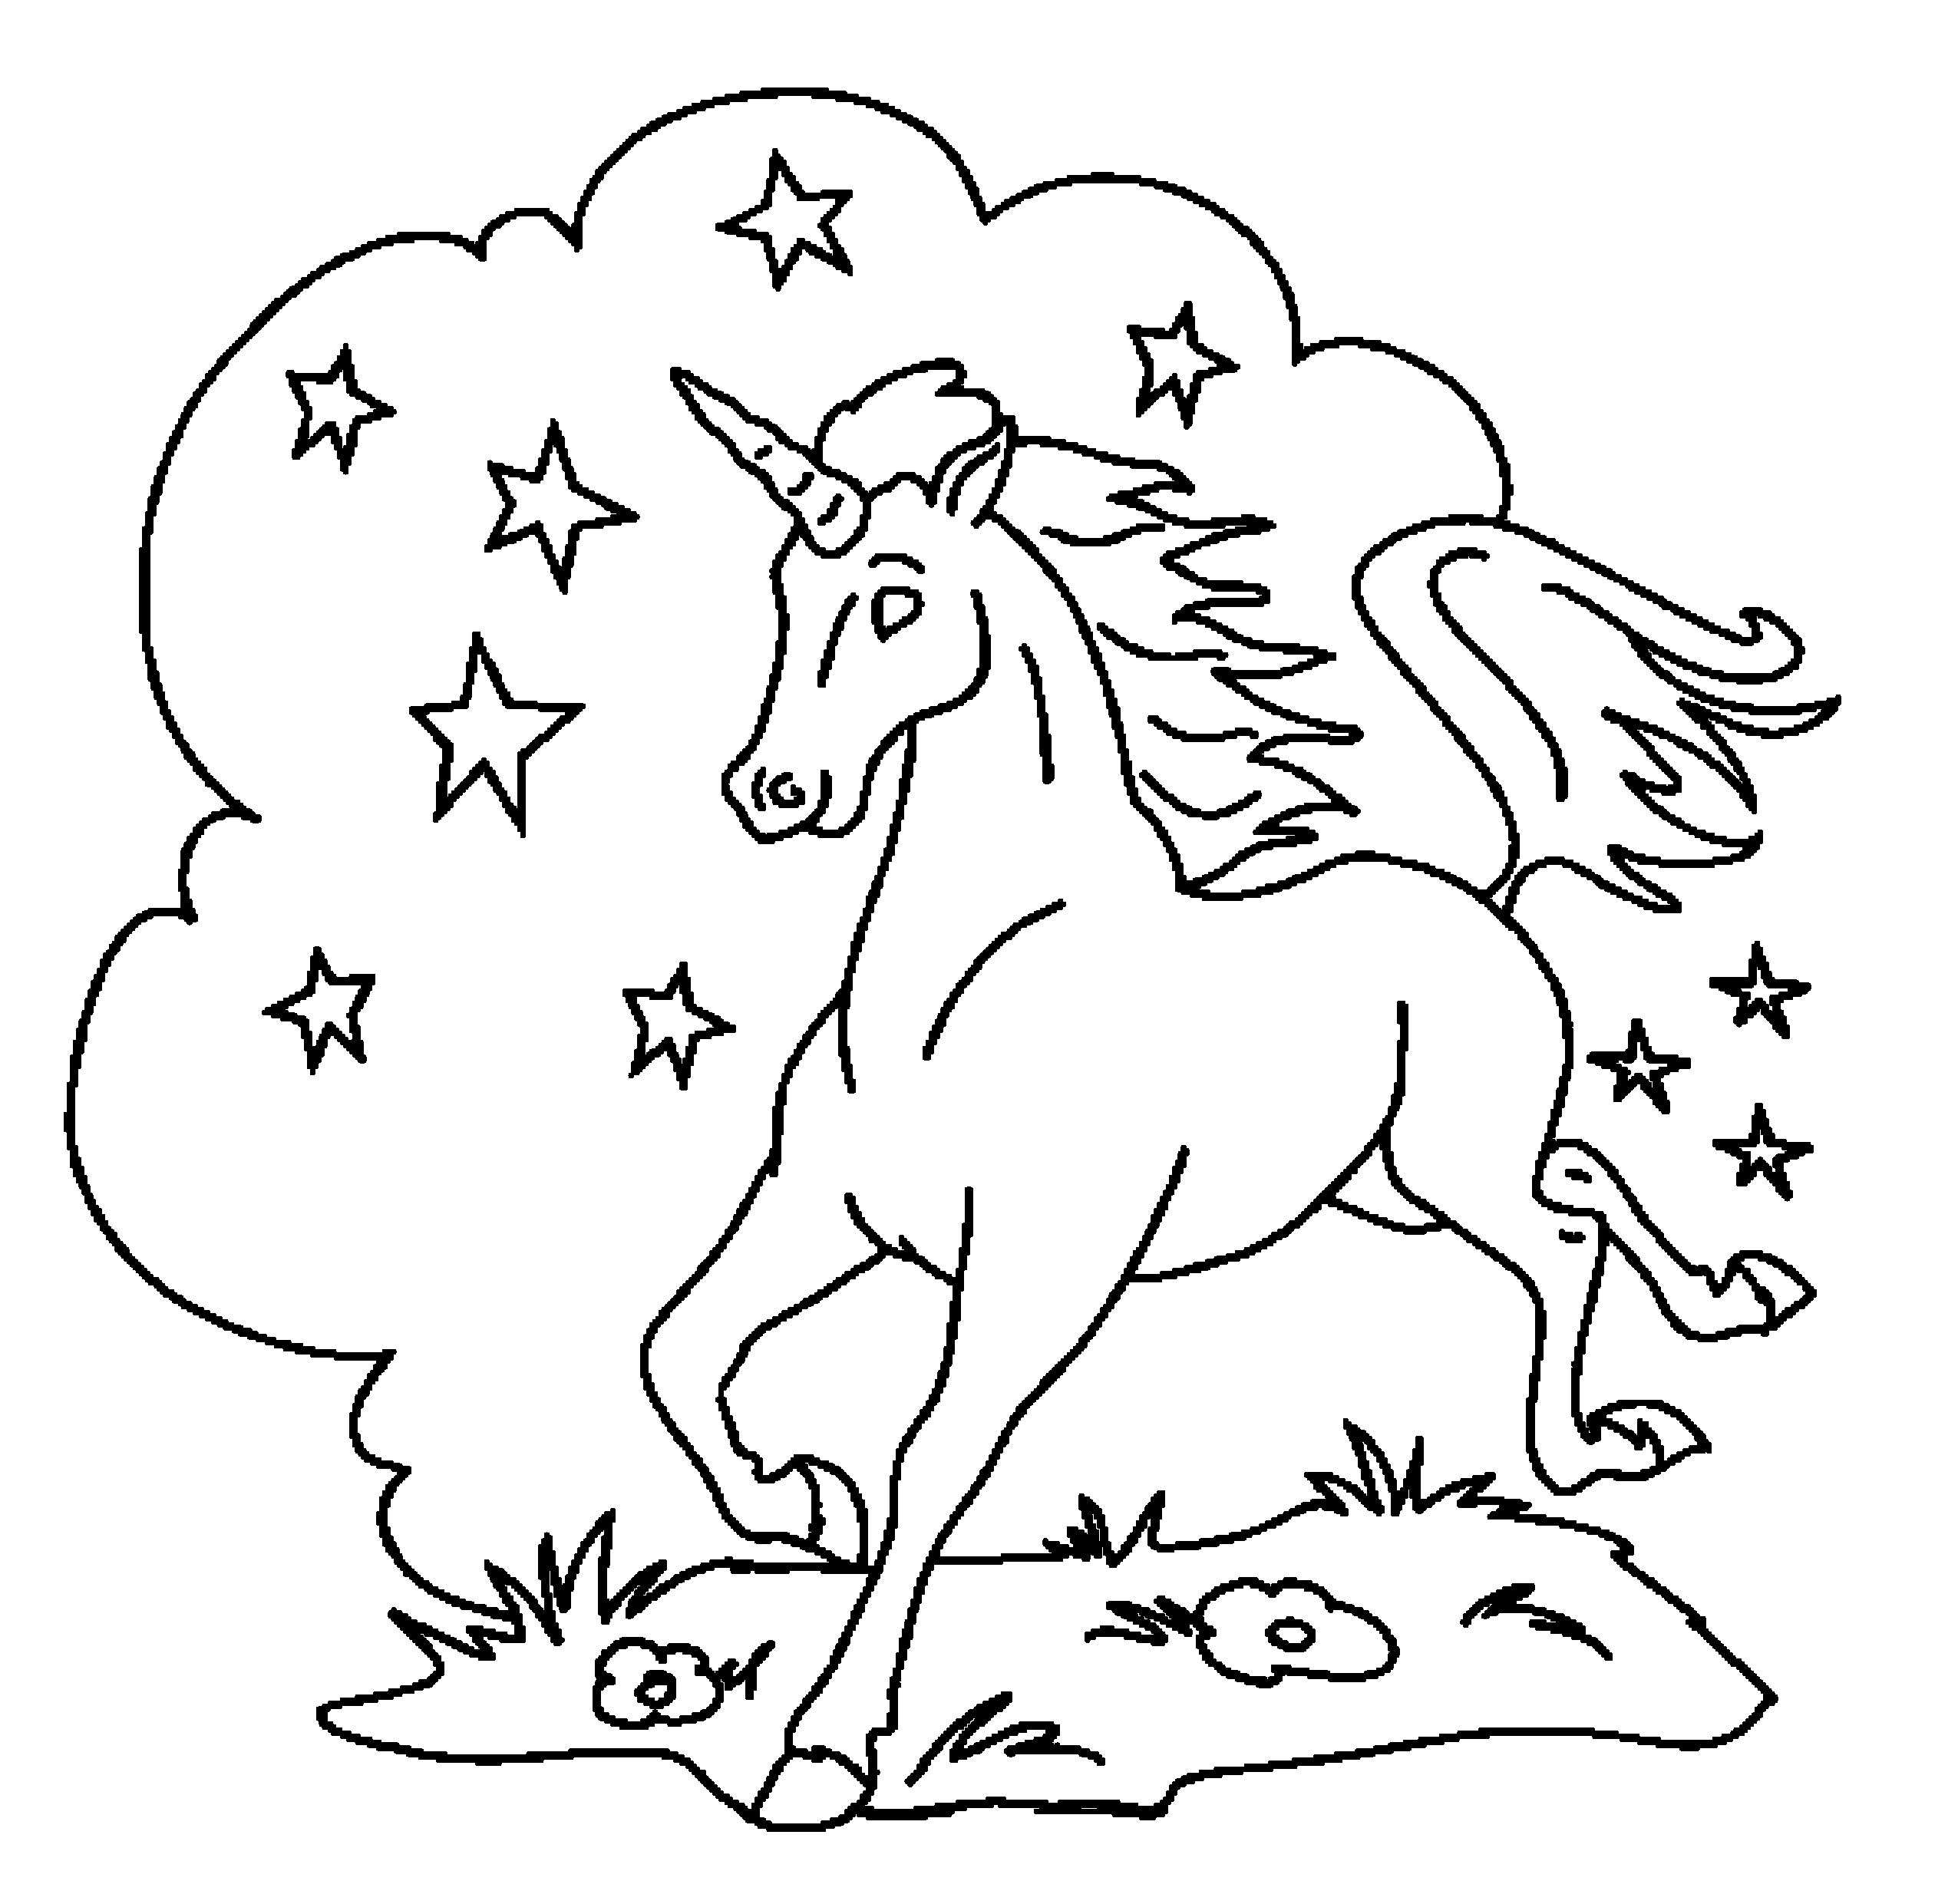 unicorns coloring pages coloring pages unicorn coloring pages free and printable coloring pages unicorns 